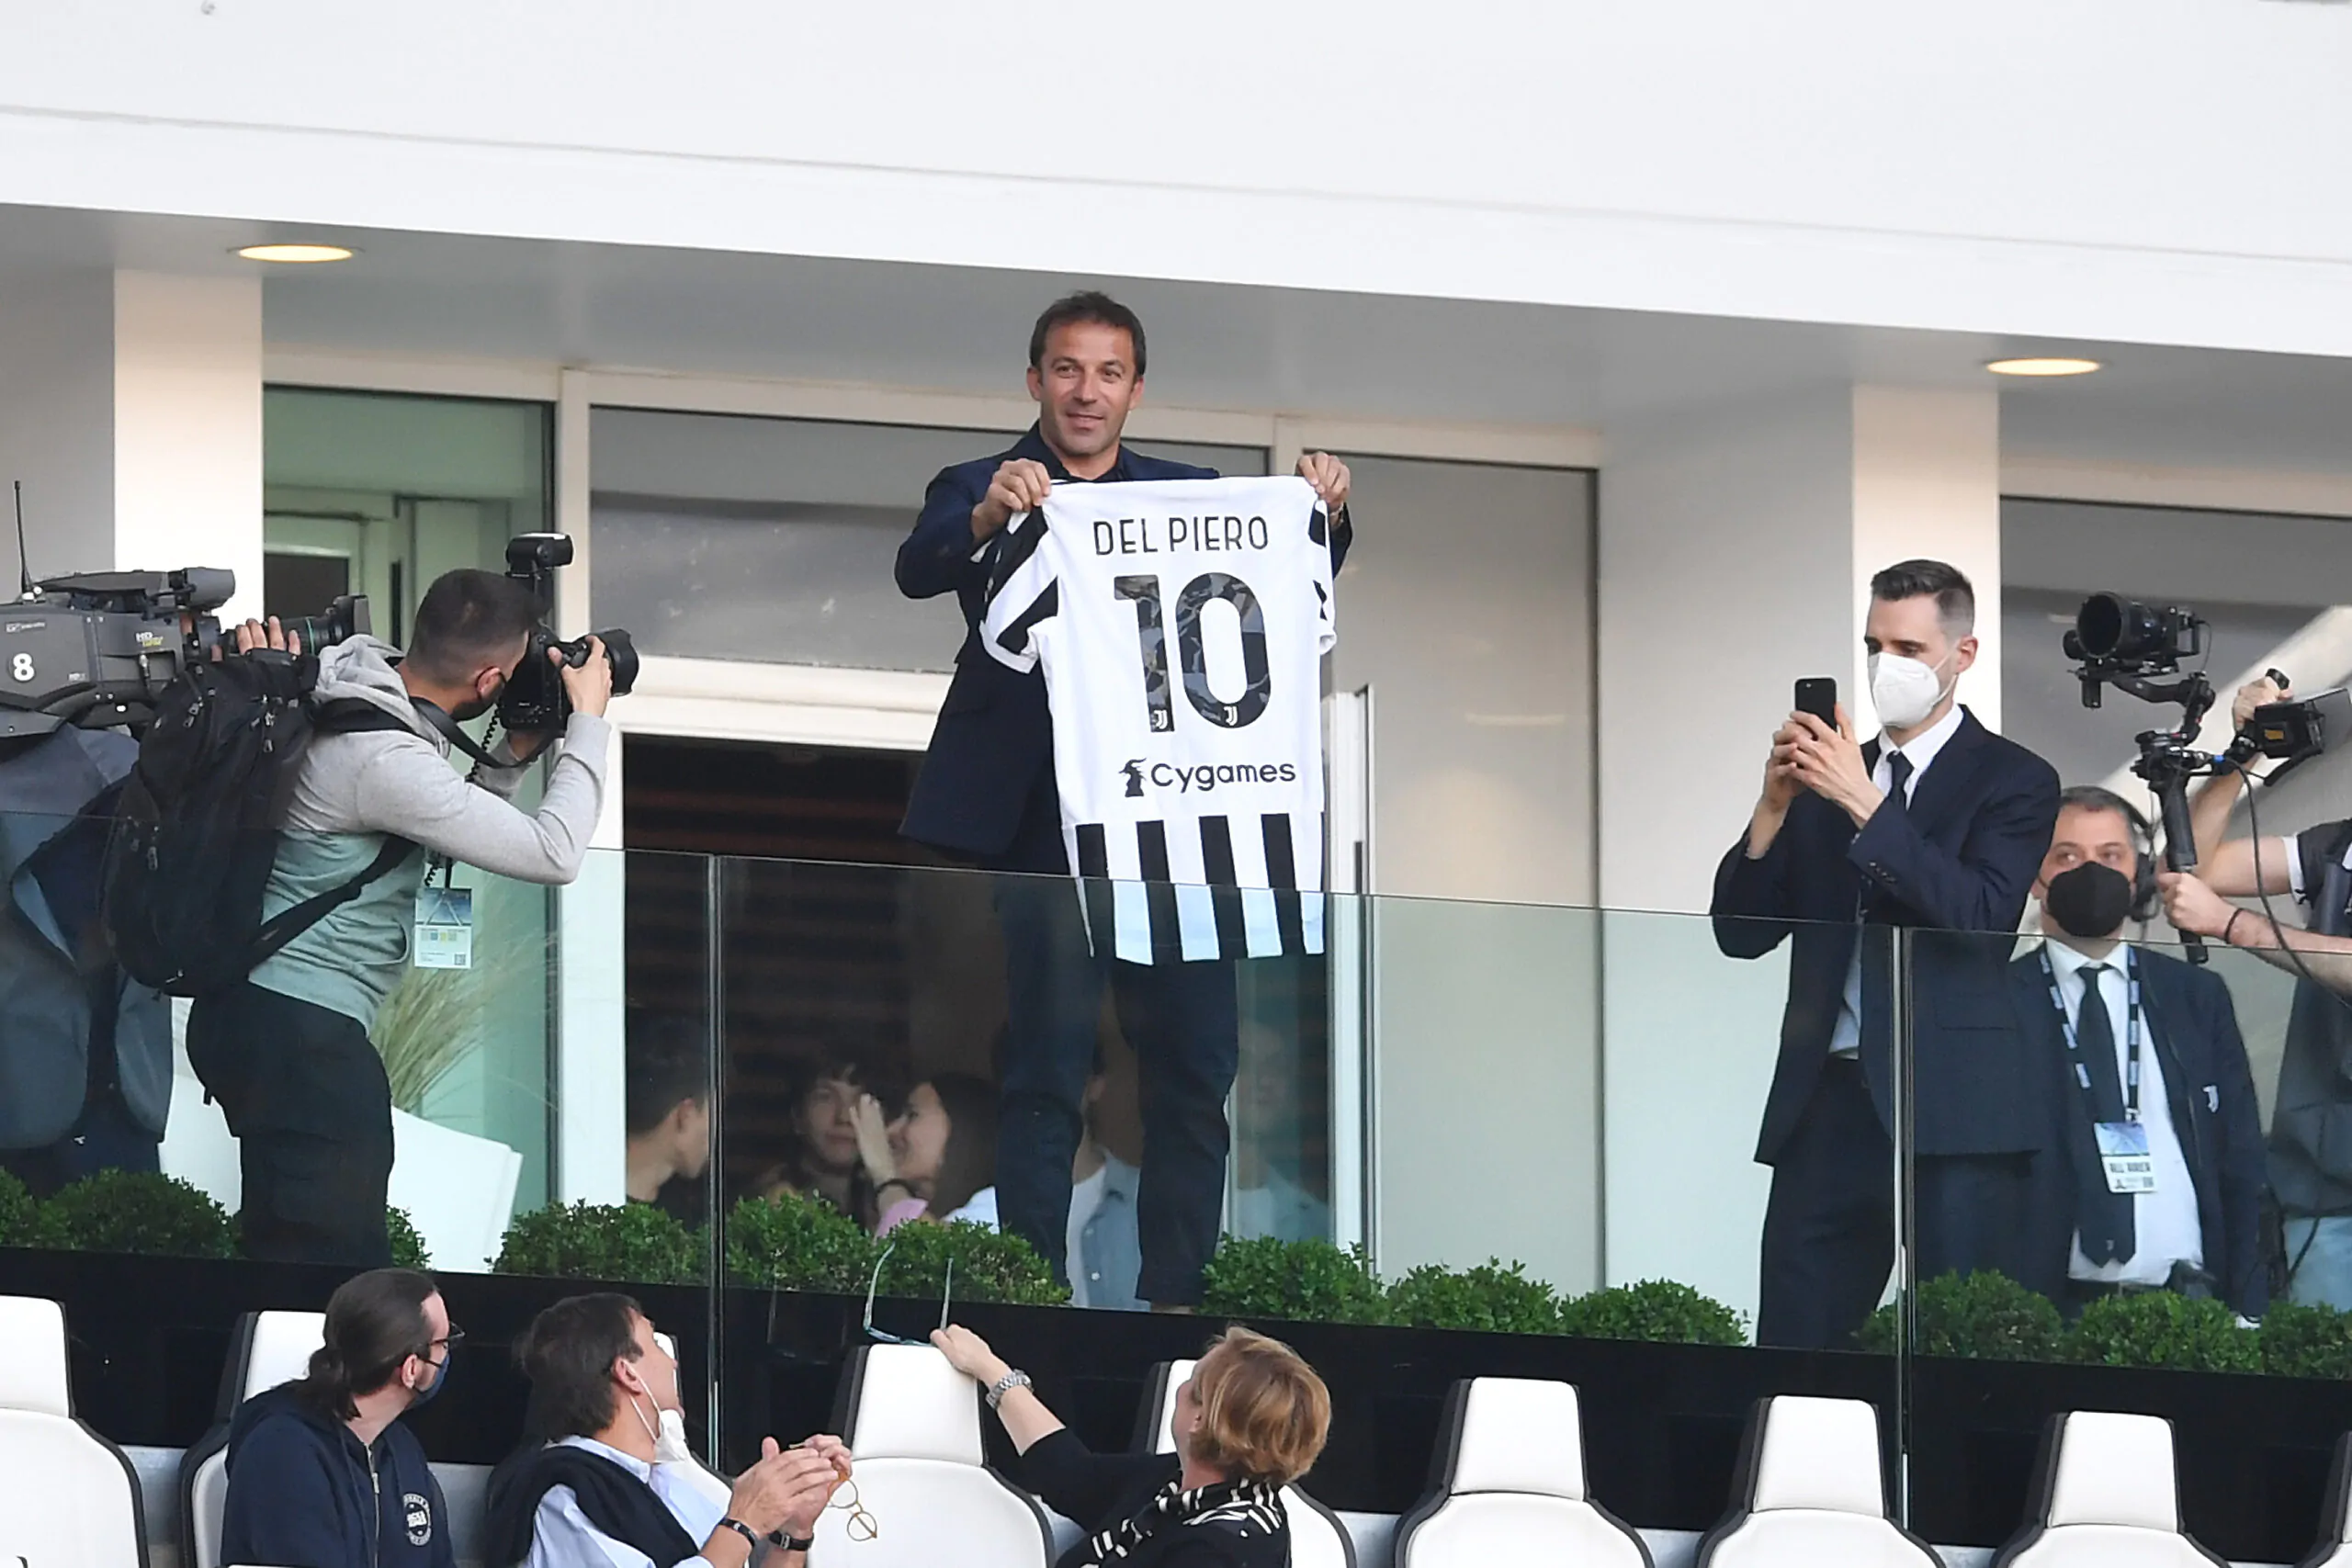 Il figlio di Del Piero firma per il top club: i dettagli